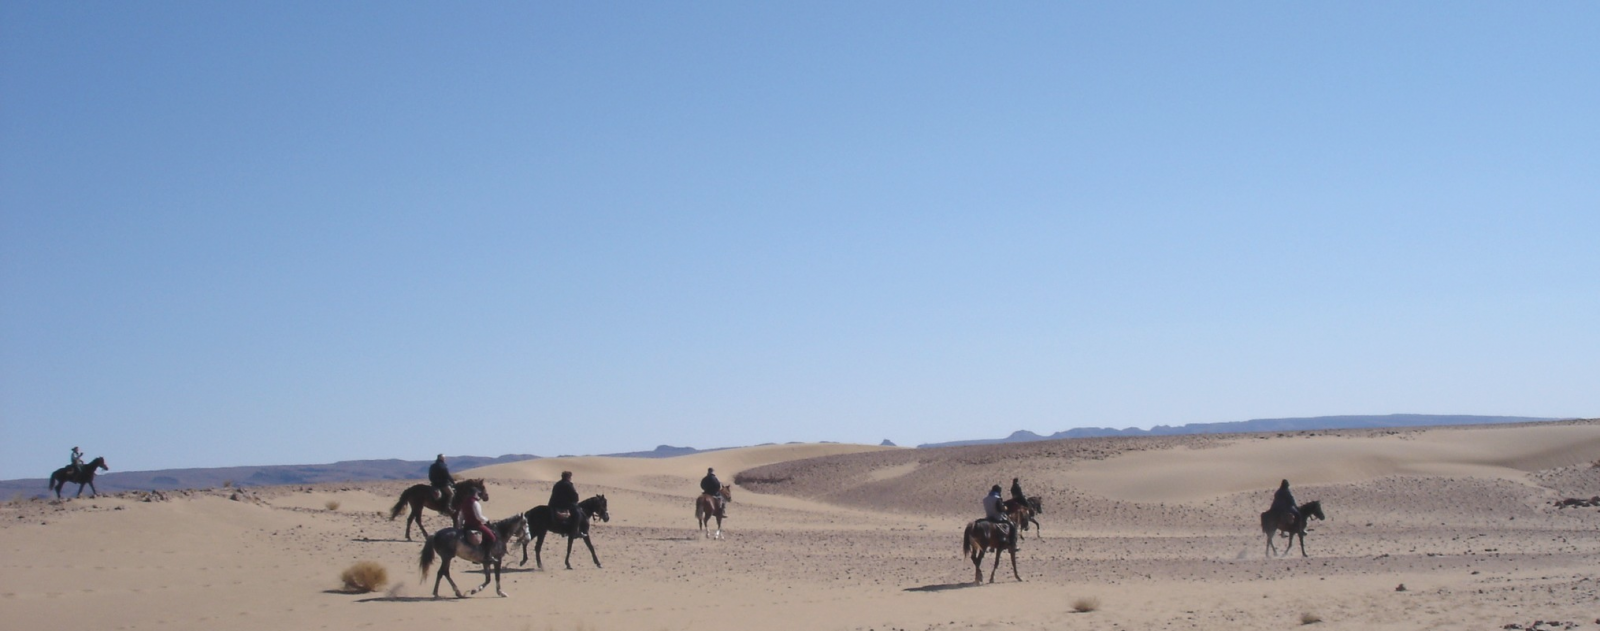 horseback riding morrocco desert